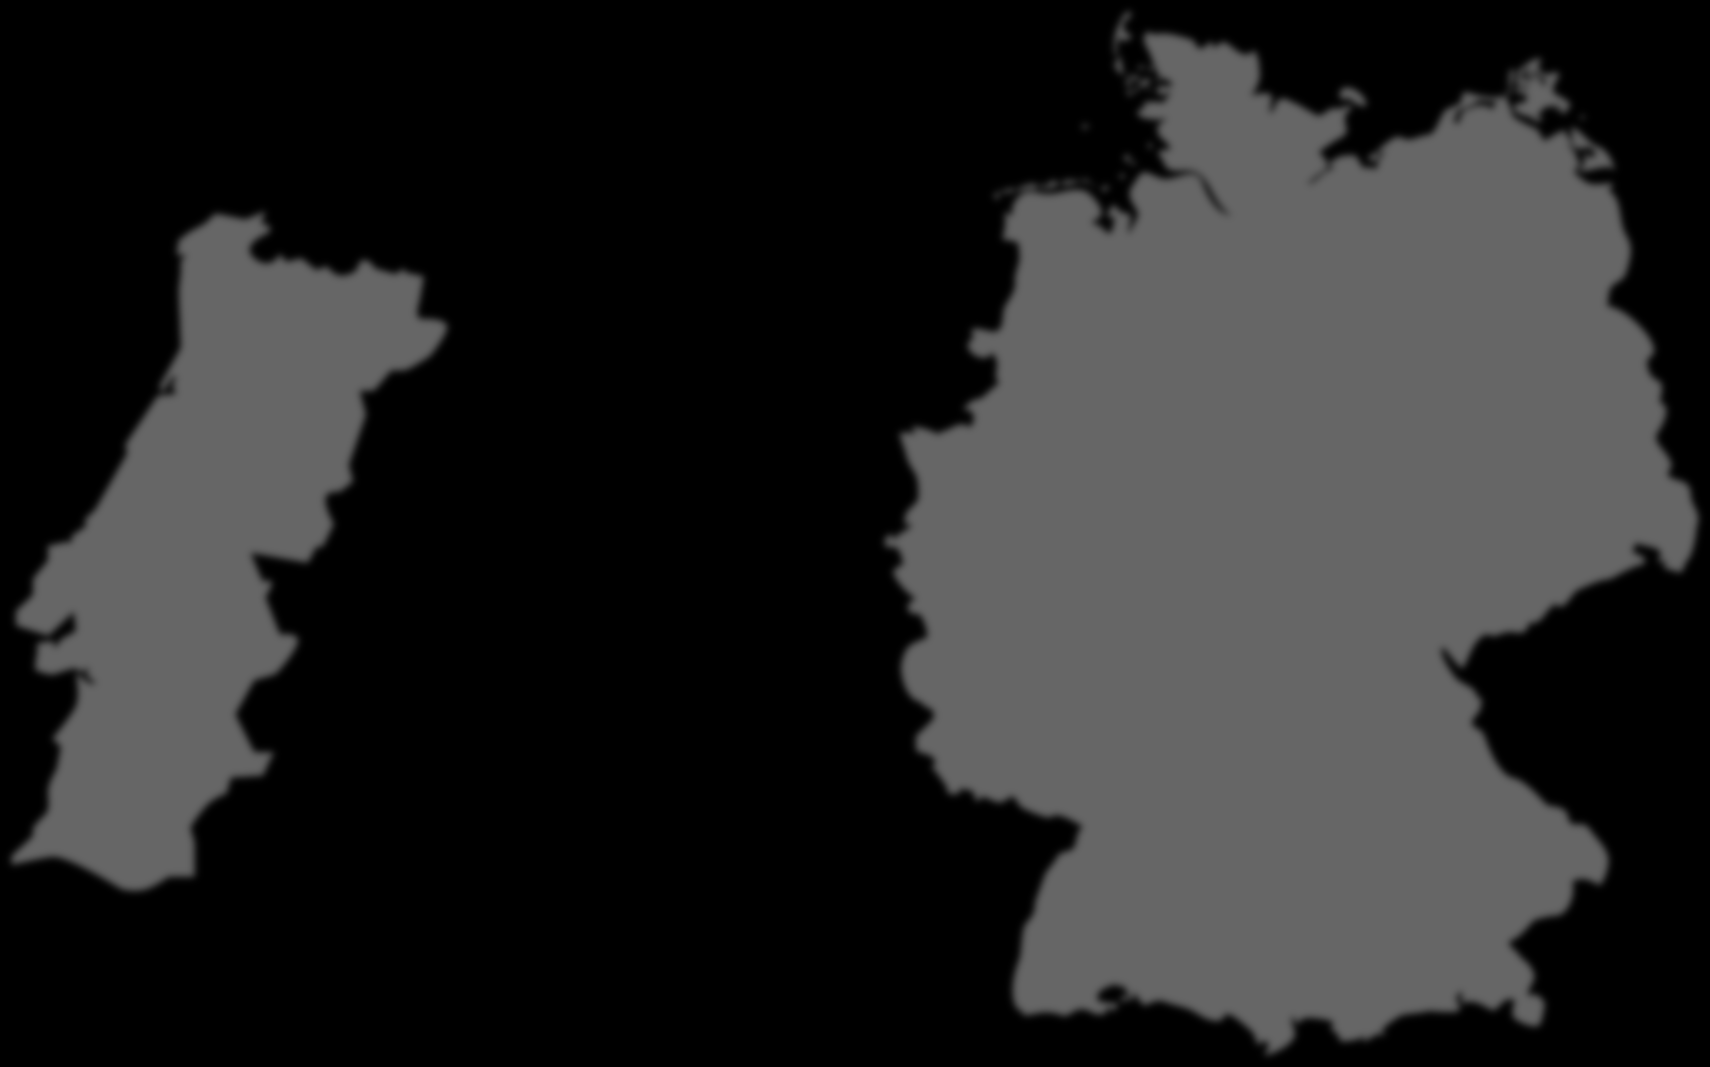 Mercado para Portugal Ligações aéreas entre Portugal e a S14 W14 S14 + W14 Hamburgo Fonte: ANA Aeroportos de Portugal Bremen Hanover Berlim Açores com ligações a Frankfurt, Dusseldorf, Munique (S14)